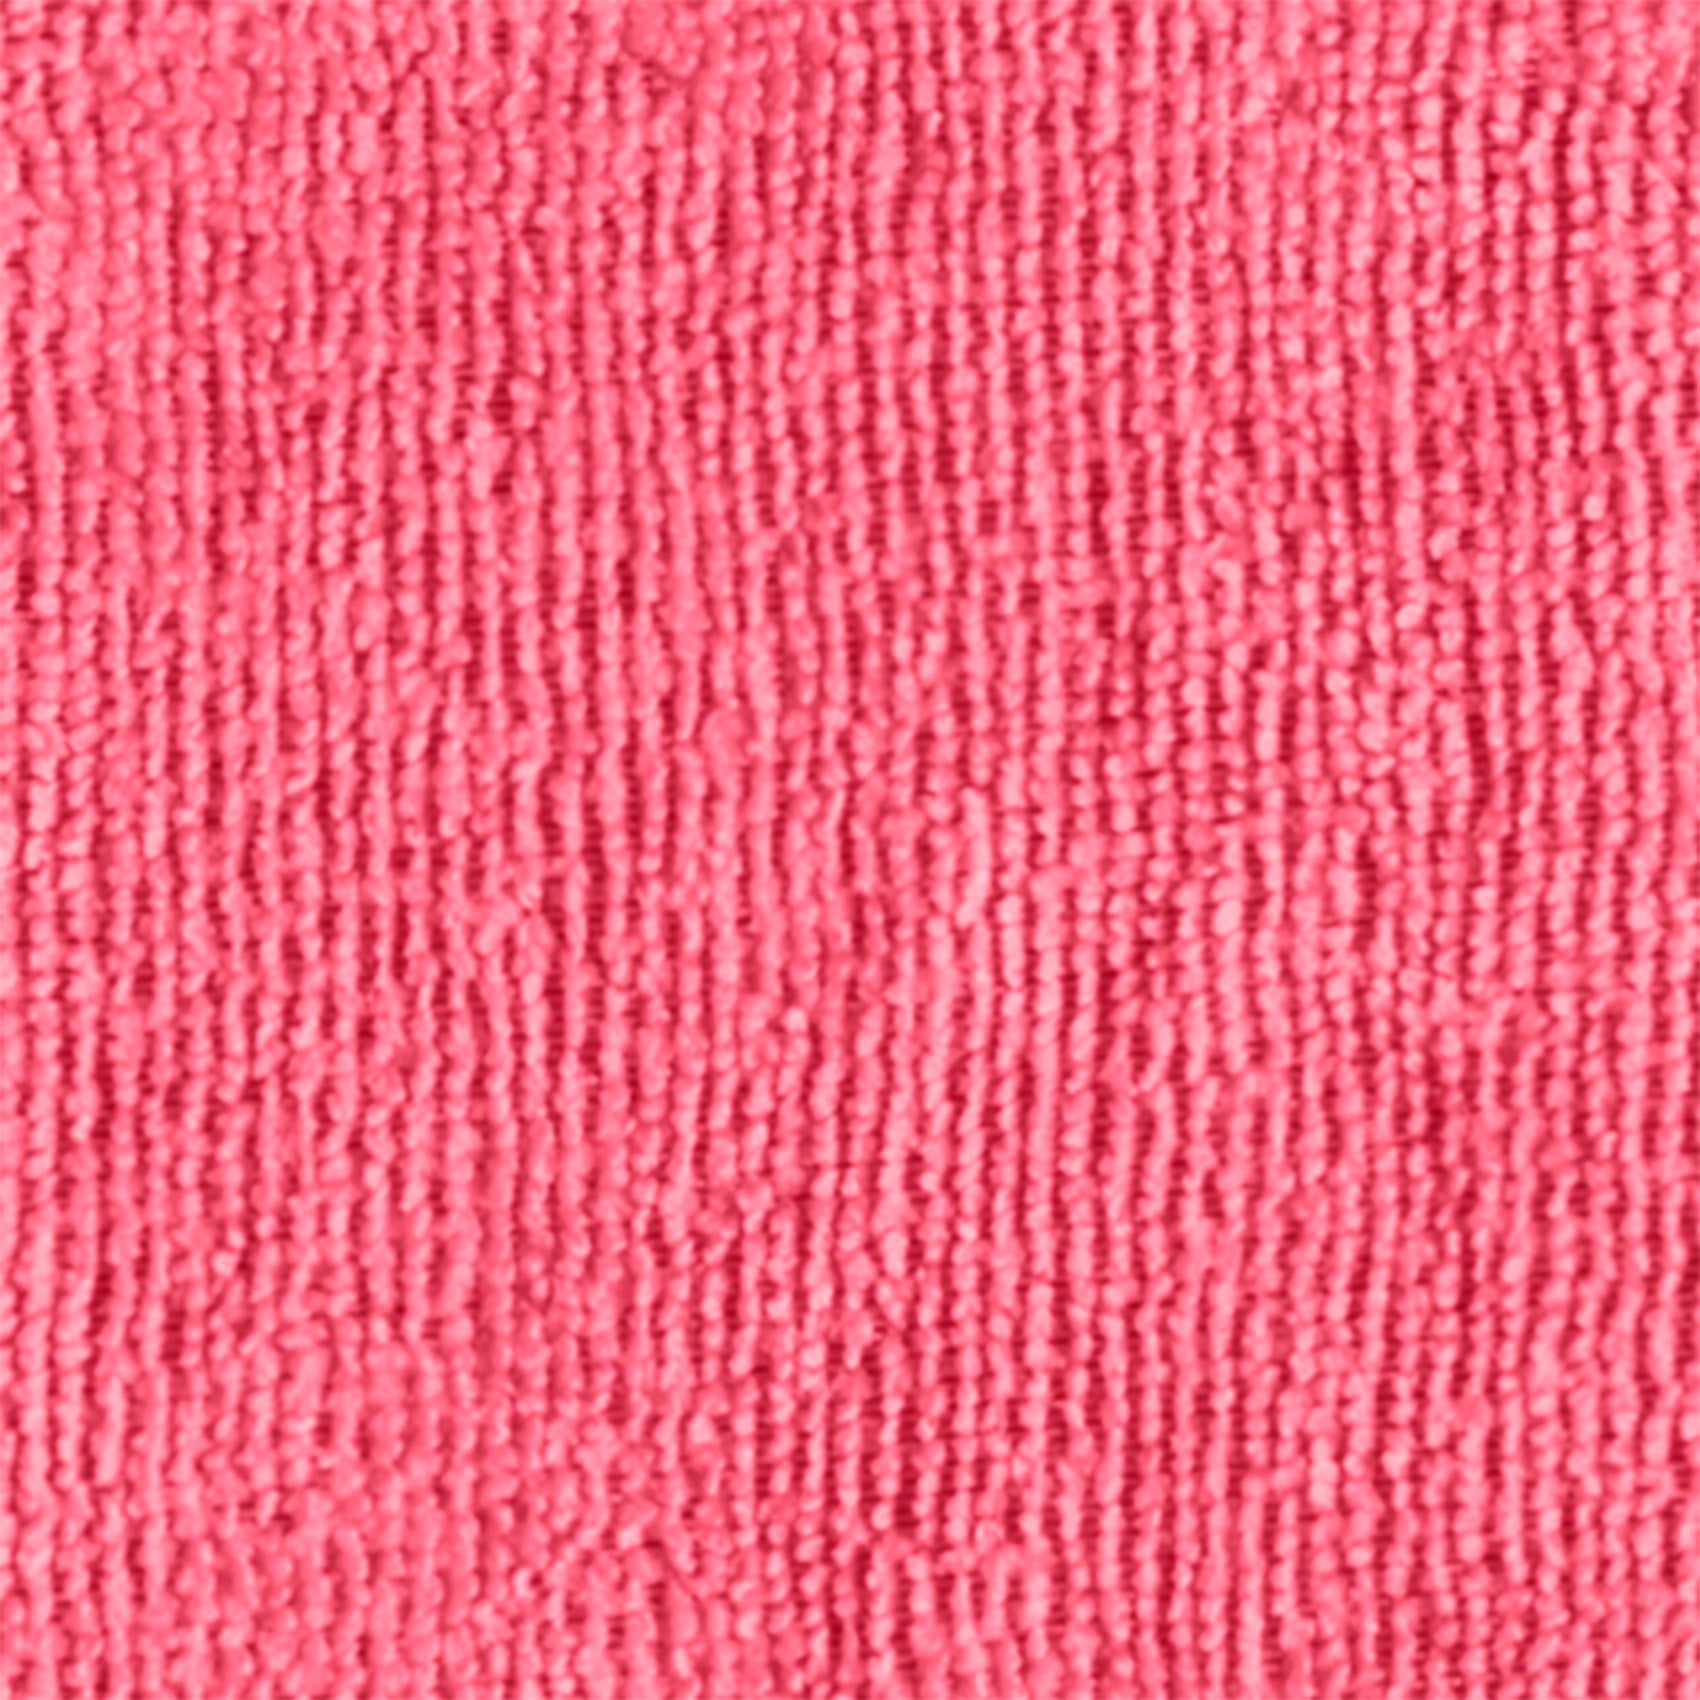 Pano microfibra vermelho MULTI-T, ideal para qualquer tipo de sujeira e superfície.40*40CM